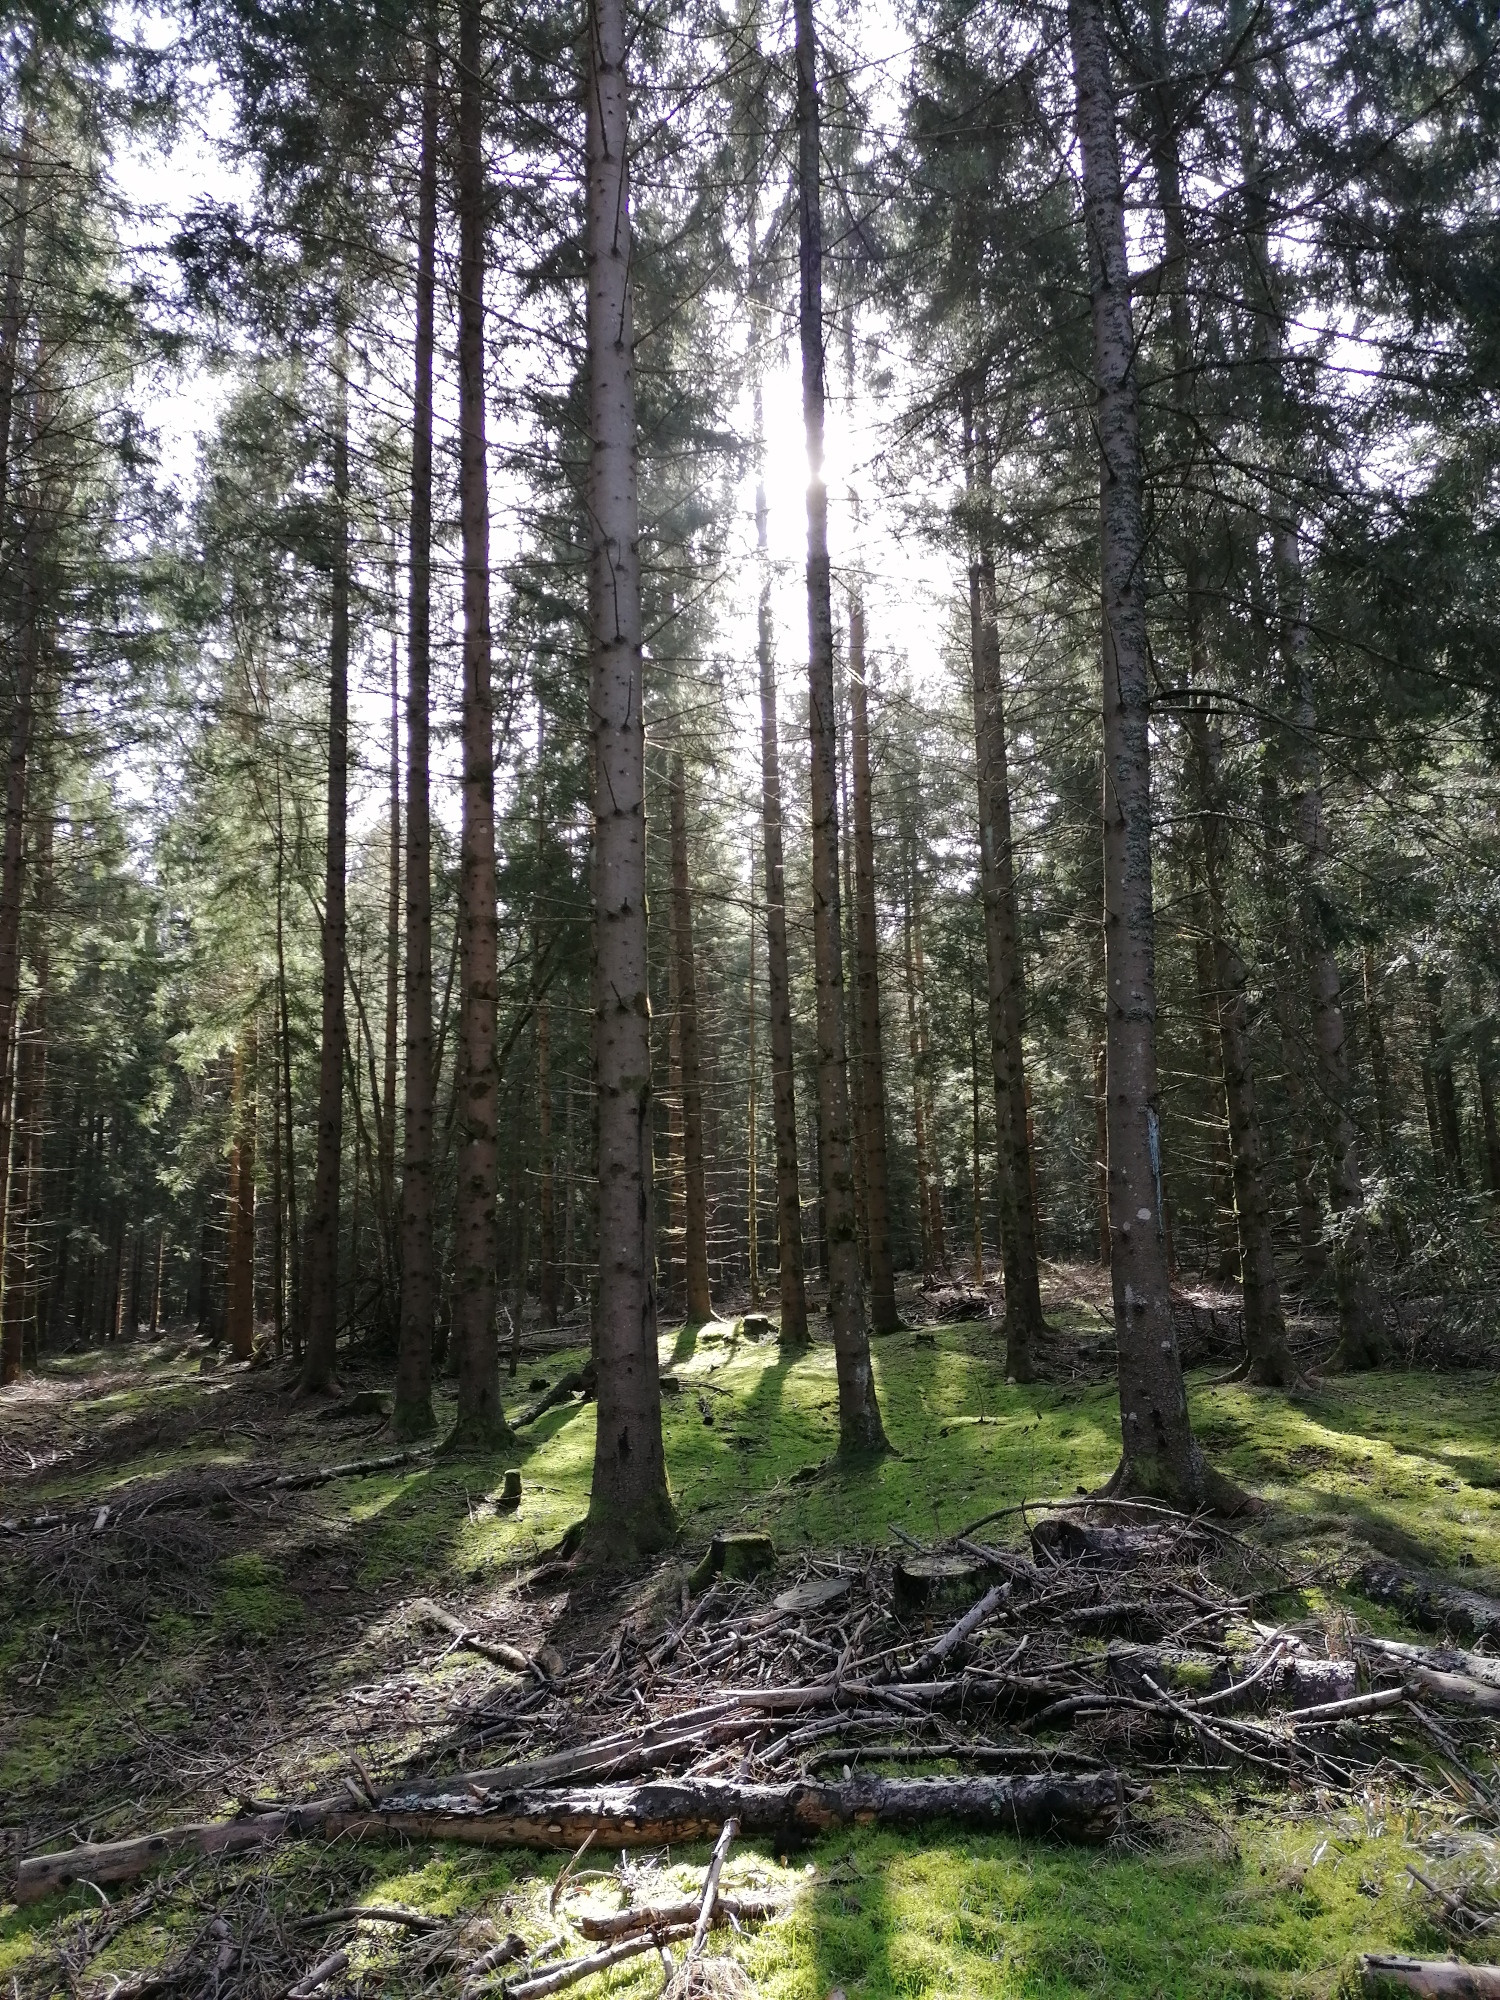 Gestion forestière : comment valoriser ses forêts ?